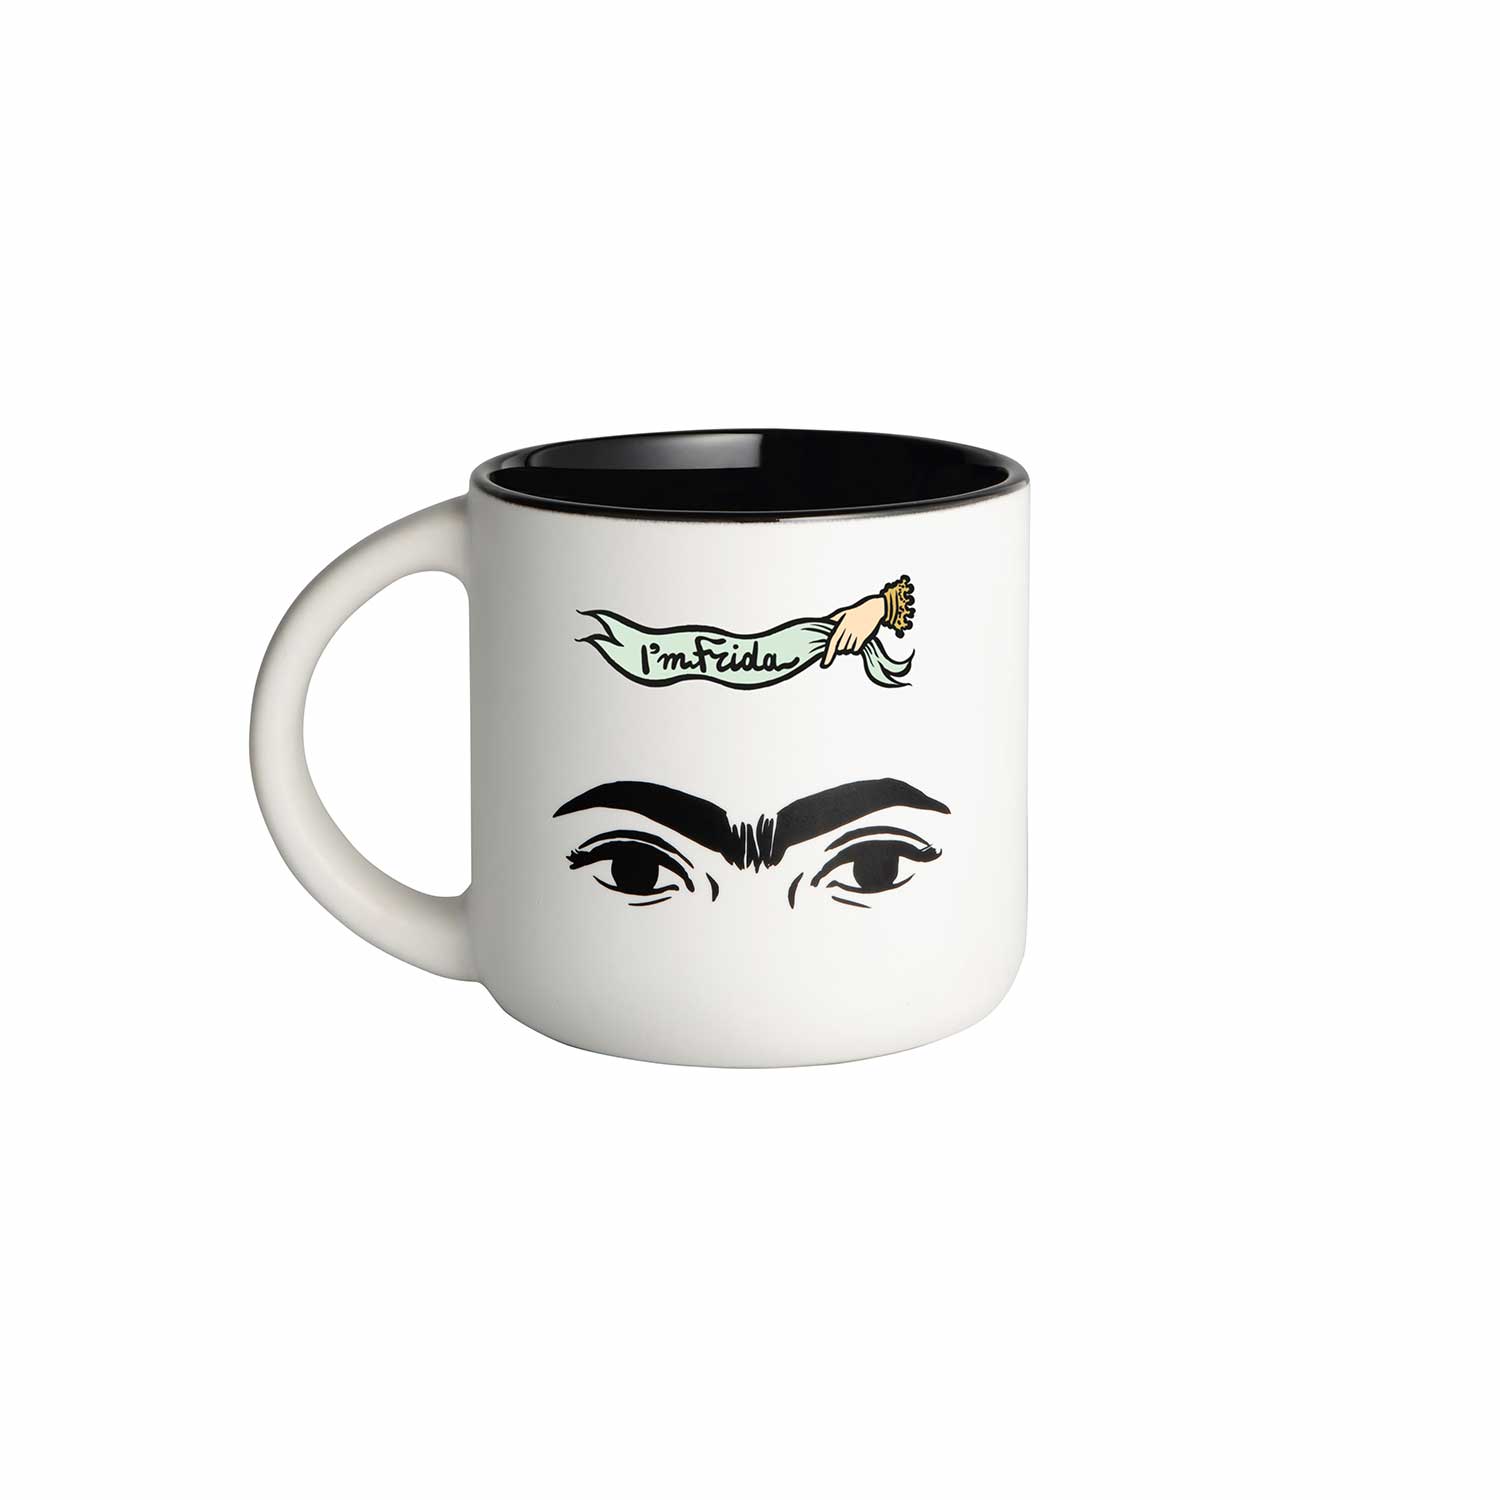 “I’m Frida” eyes and unibrow mug